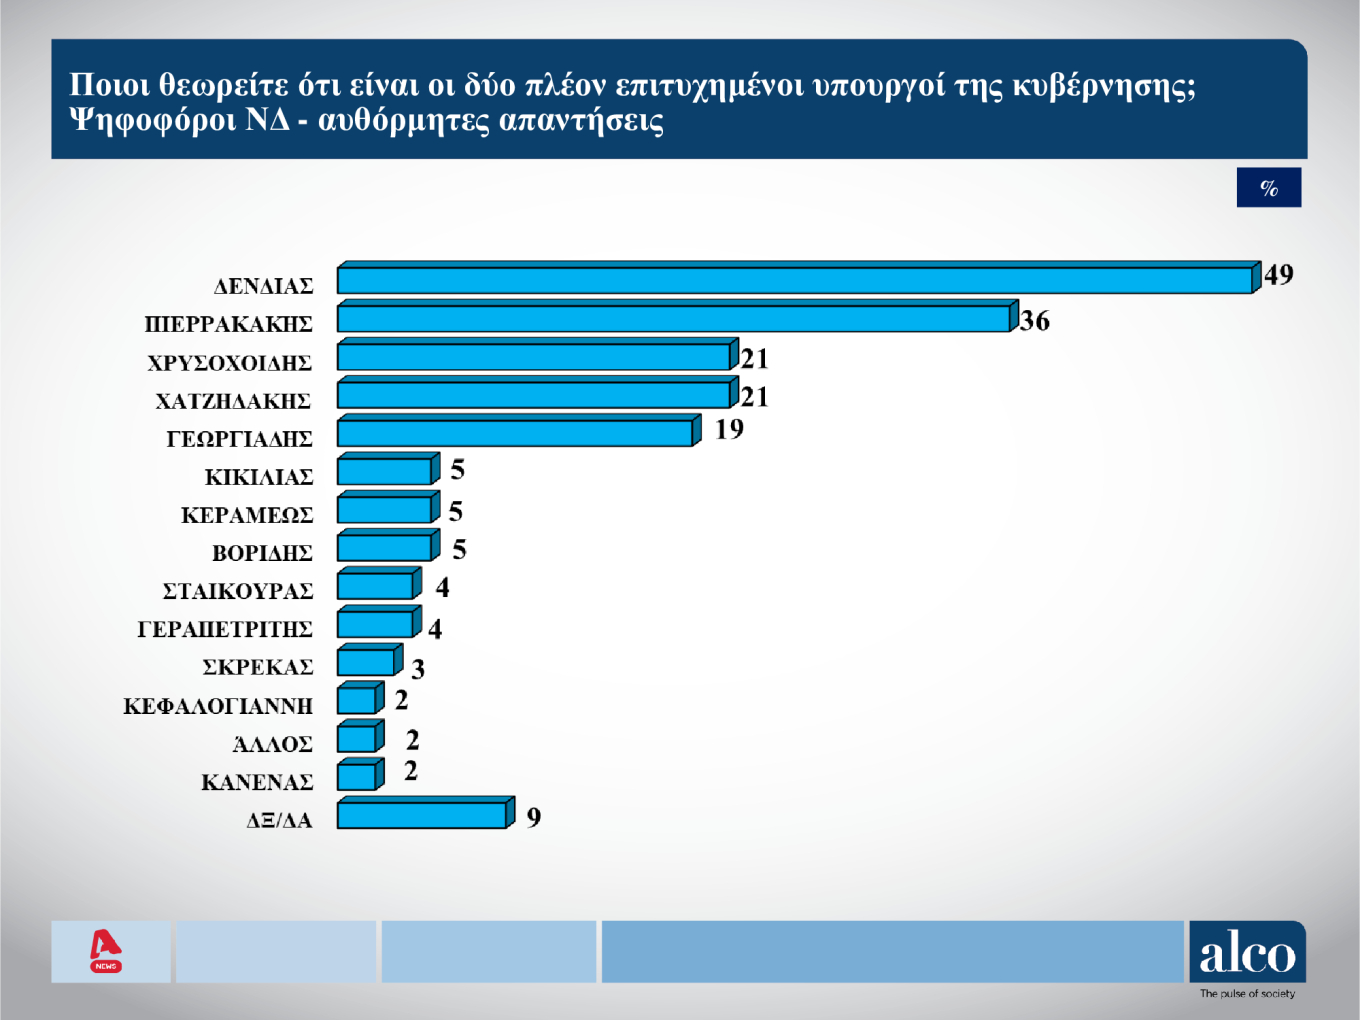 Δημοσκόπηση Alco: Ποιοι είναι οι πιο επιτυχημένοι υπουργοί της Kυβέρνησης